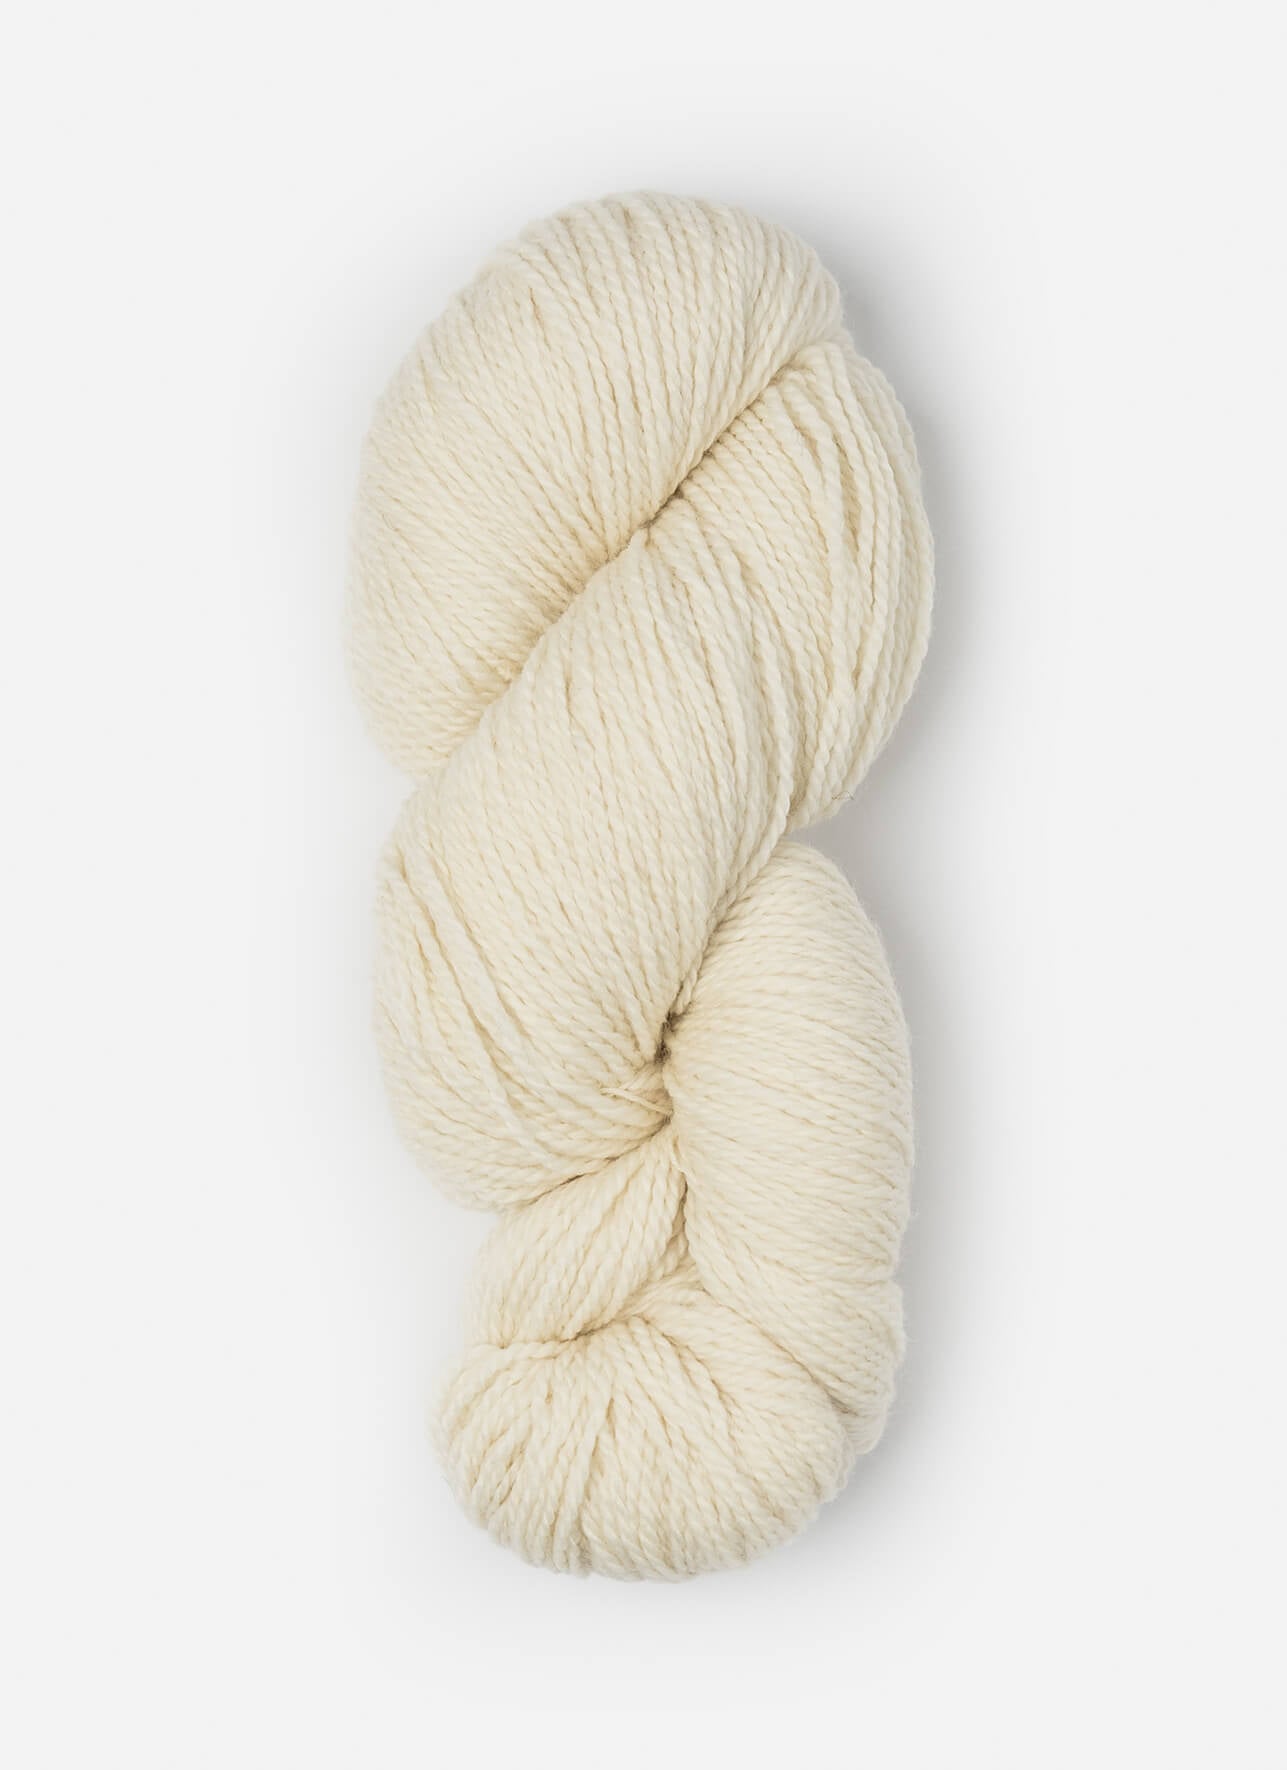 Blue Sky Fibers Woolstok 150 gram wool yarn color 1303